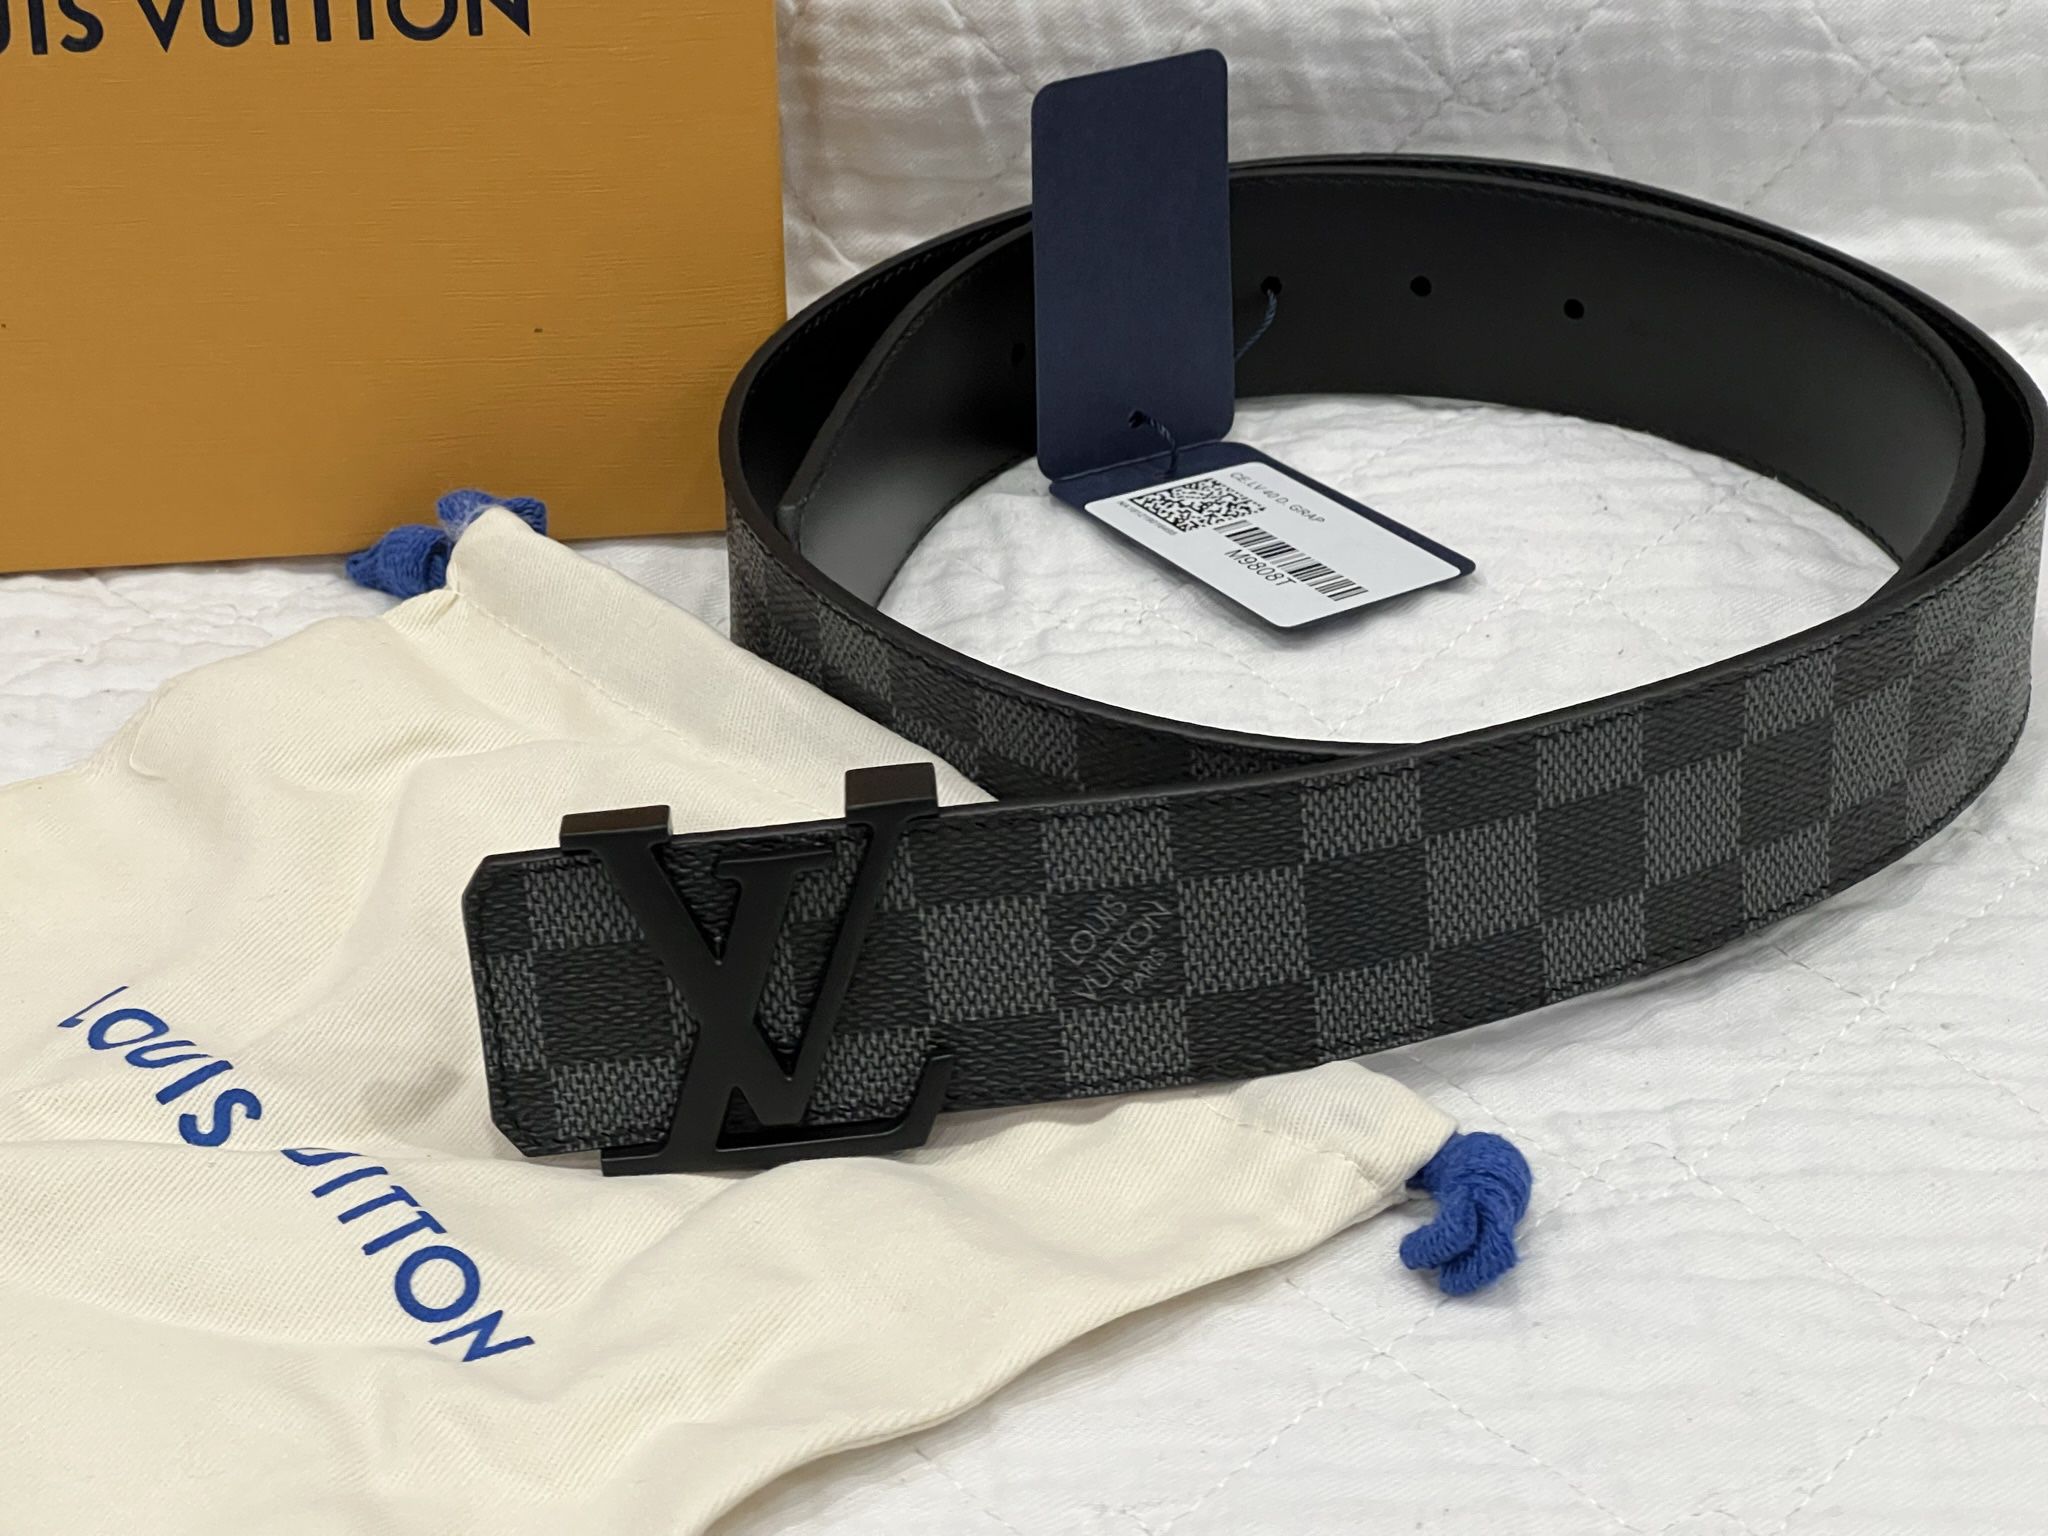 Louis Vuitton (MEN) Belt for Sale in Greece, NY - OfferUp